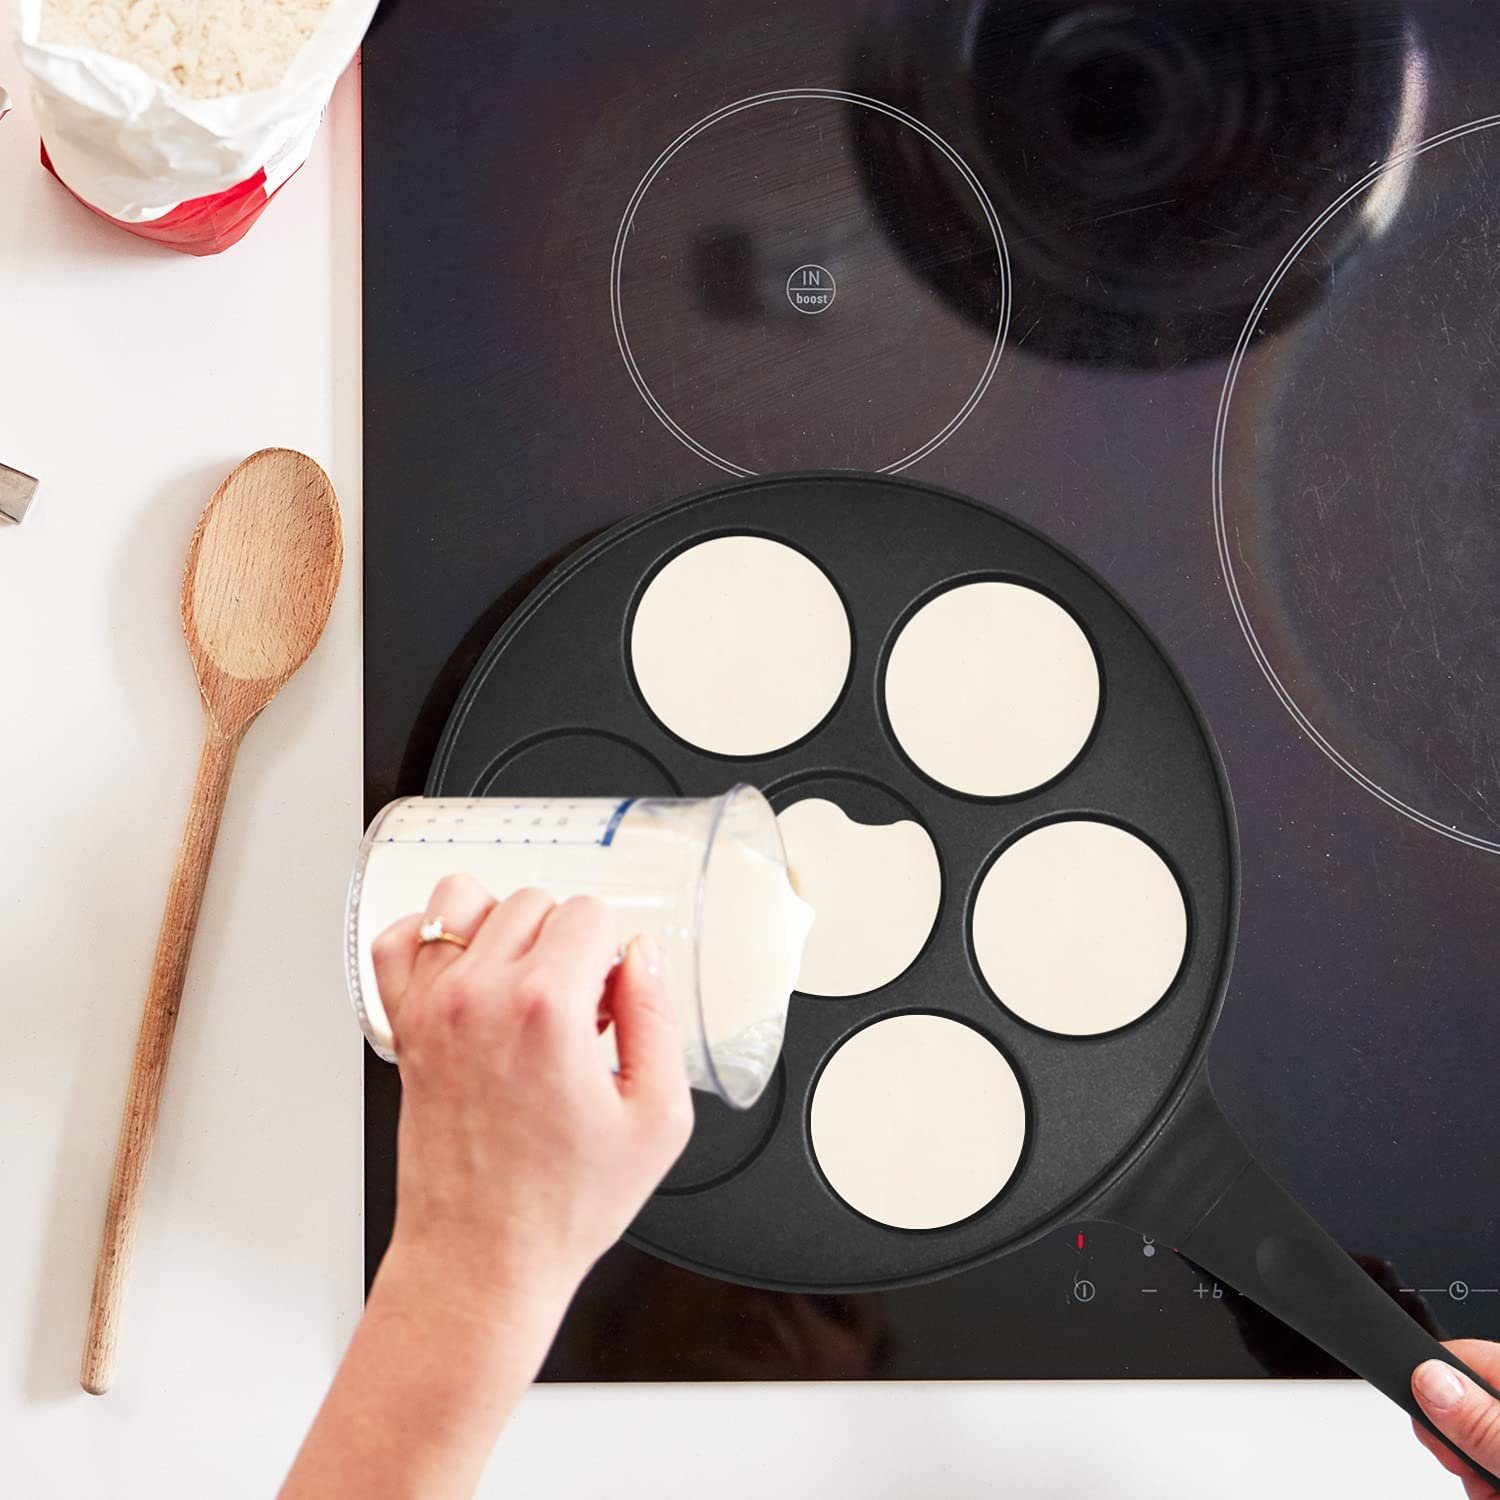 JOEJI’S Induktion Crêpepfanne aus 26,5cm Durchmesser Pancake Aluminiumguss Pfanne KITCHEN